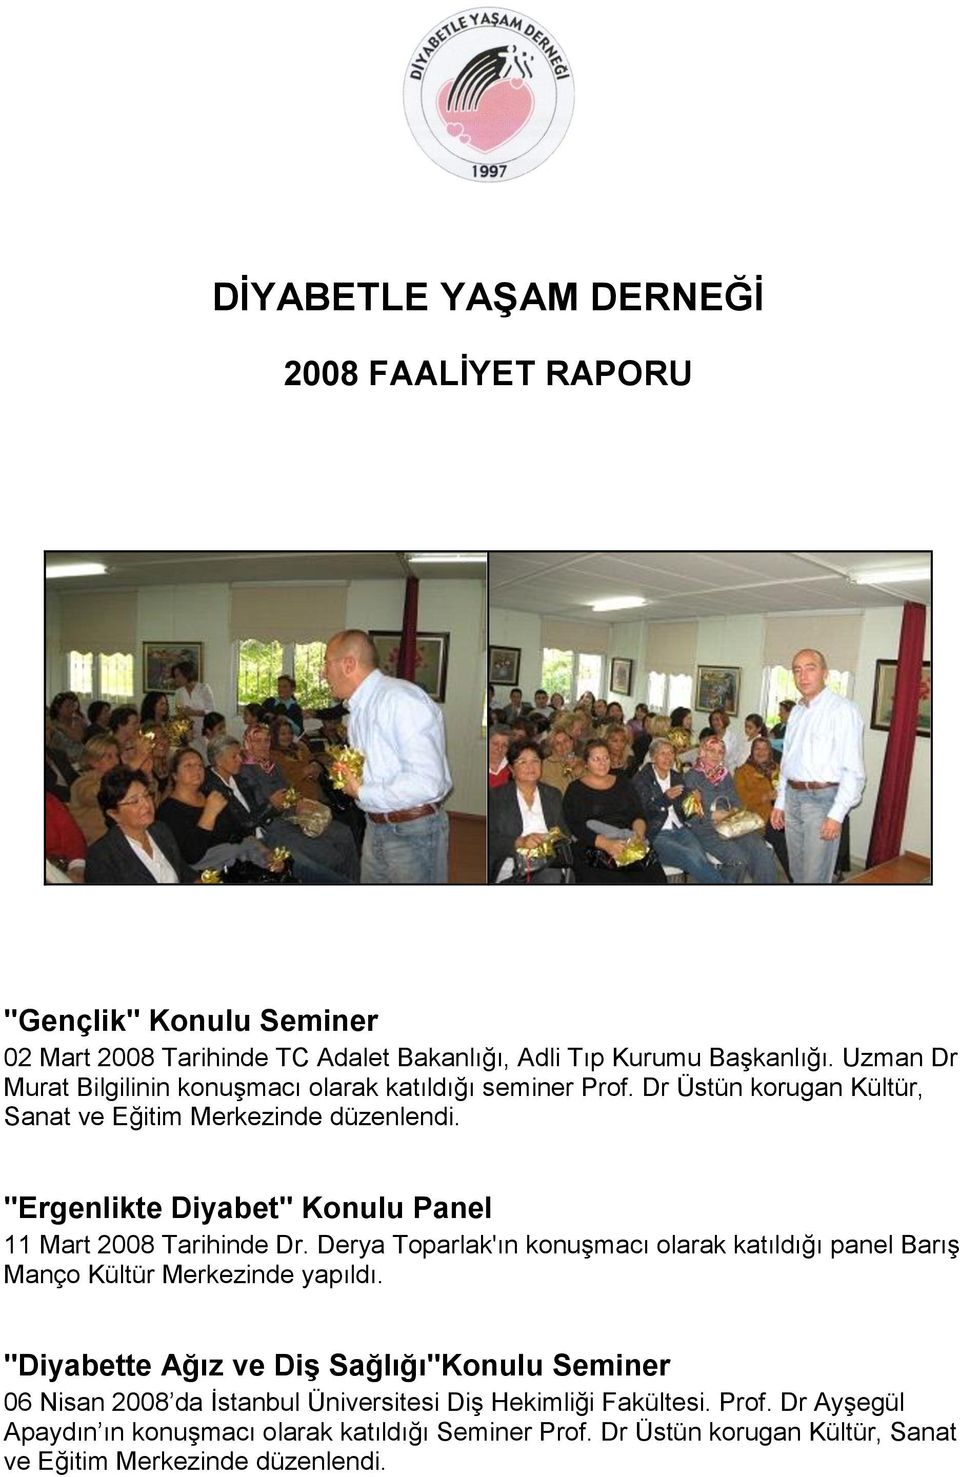 ''Ergenlikte Diyabet'' Konulu Panel 11 Mart 2008 Tarihinde Dr. Derya Toparlak'ın konuşmacı olarak katıldığı panel Barış Manço Kültür Merkezinde yapıldı.